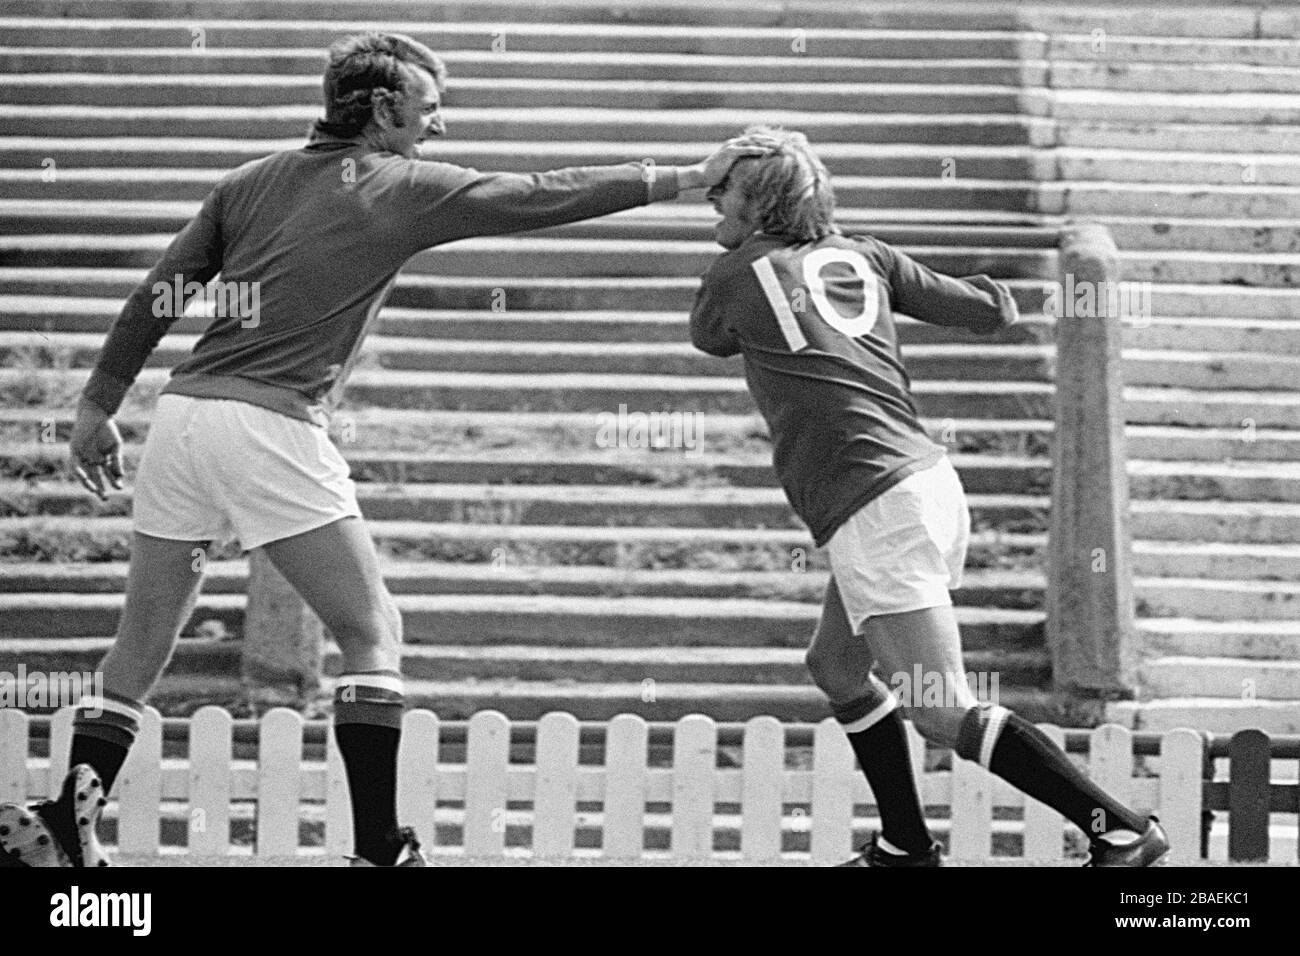 Denis Law (r) von Manchester United kämpft mit Torhüter Alex Stepney (l) während eines Fotocall. Stockfoto